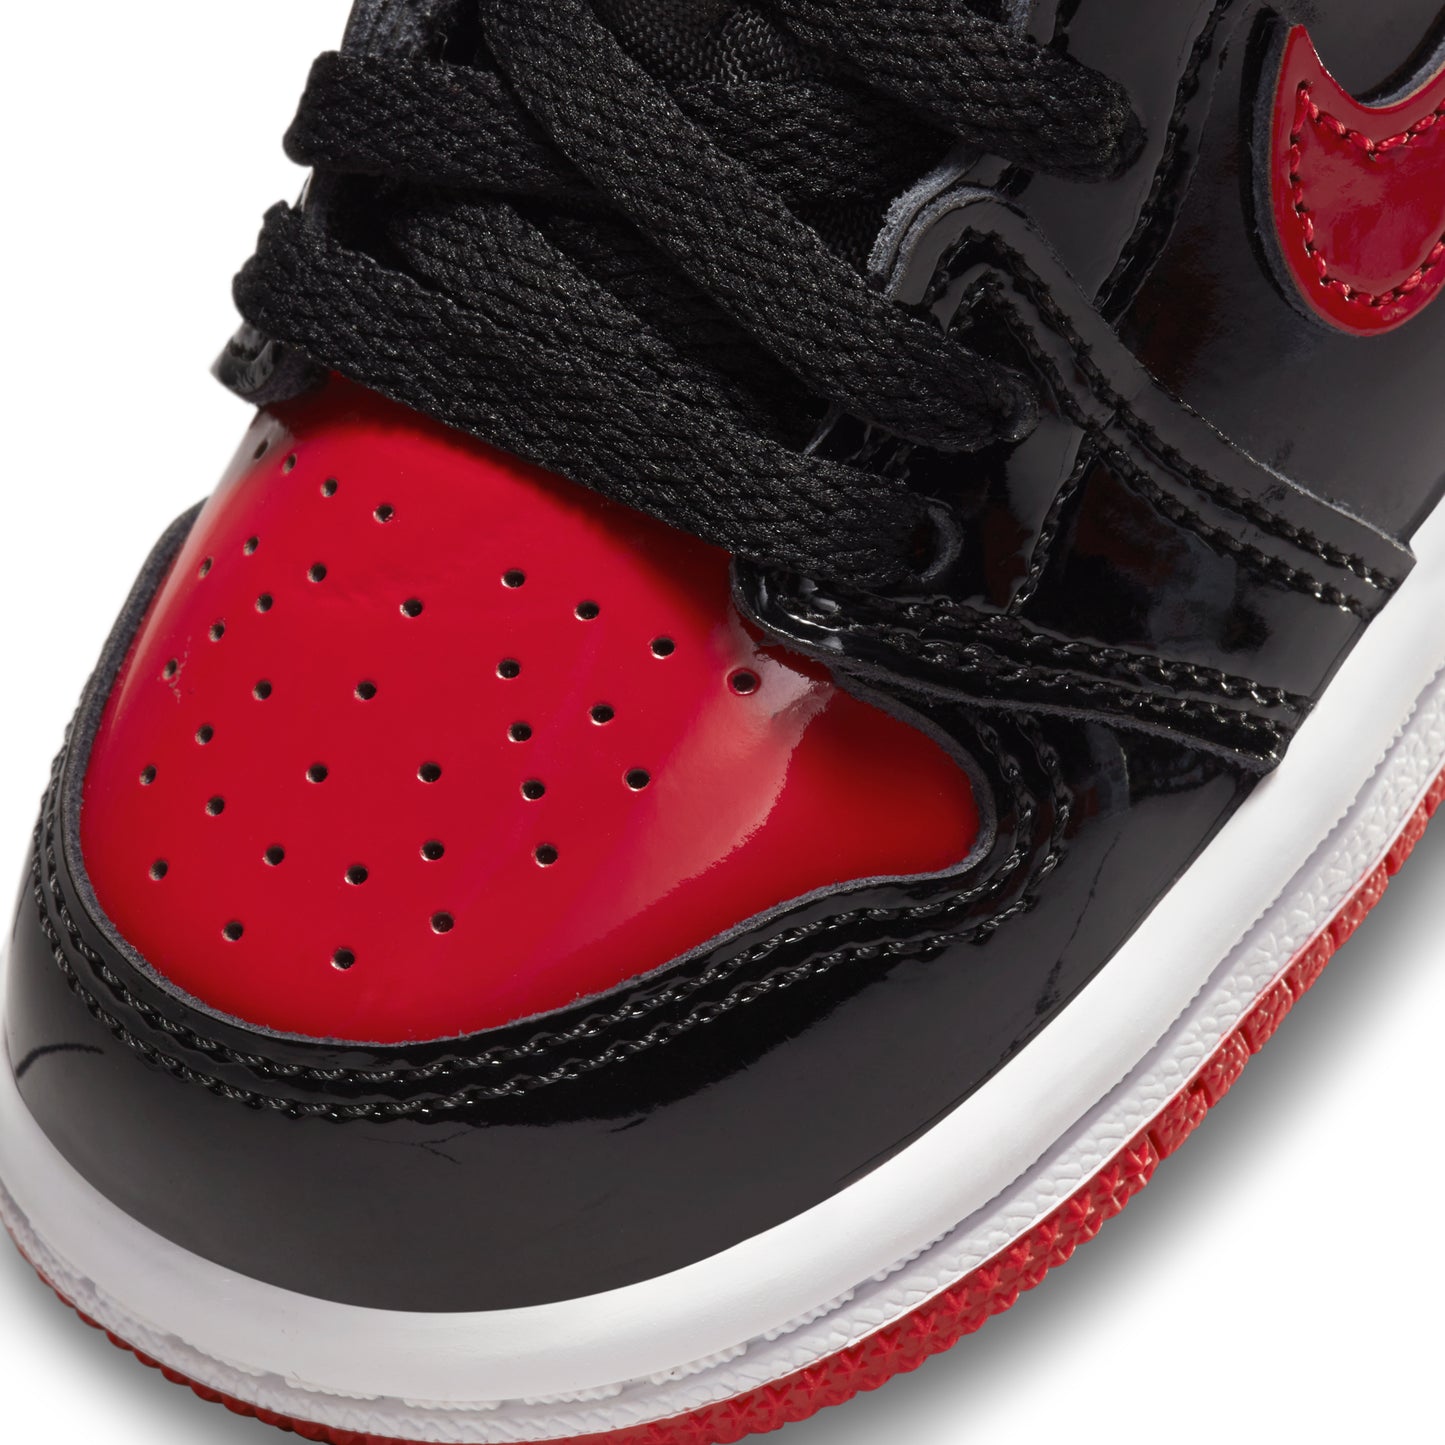 Nike Air Jordan 1 Retro High OG TD "Patent Bred"